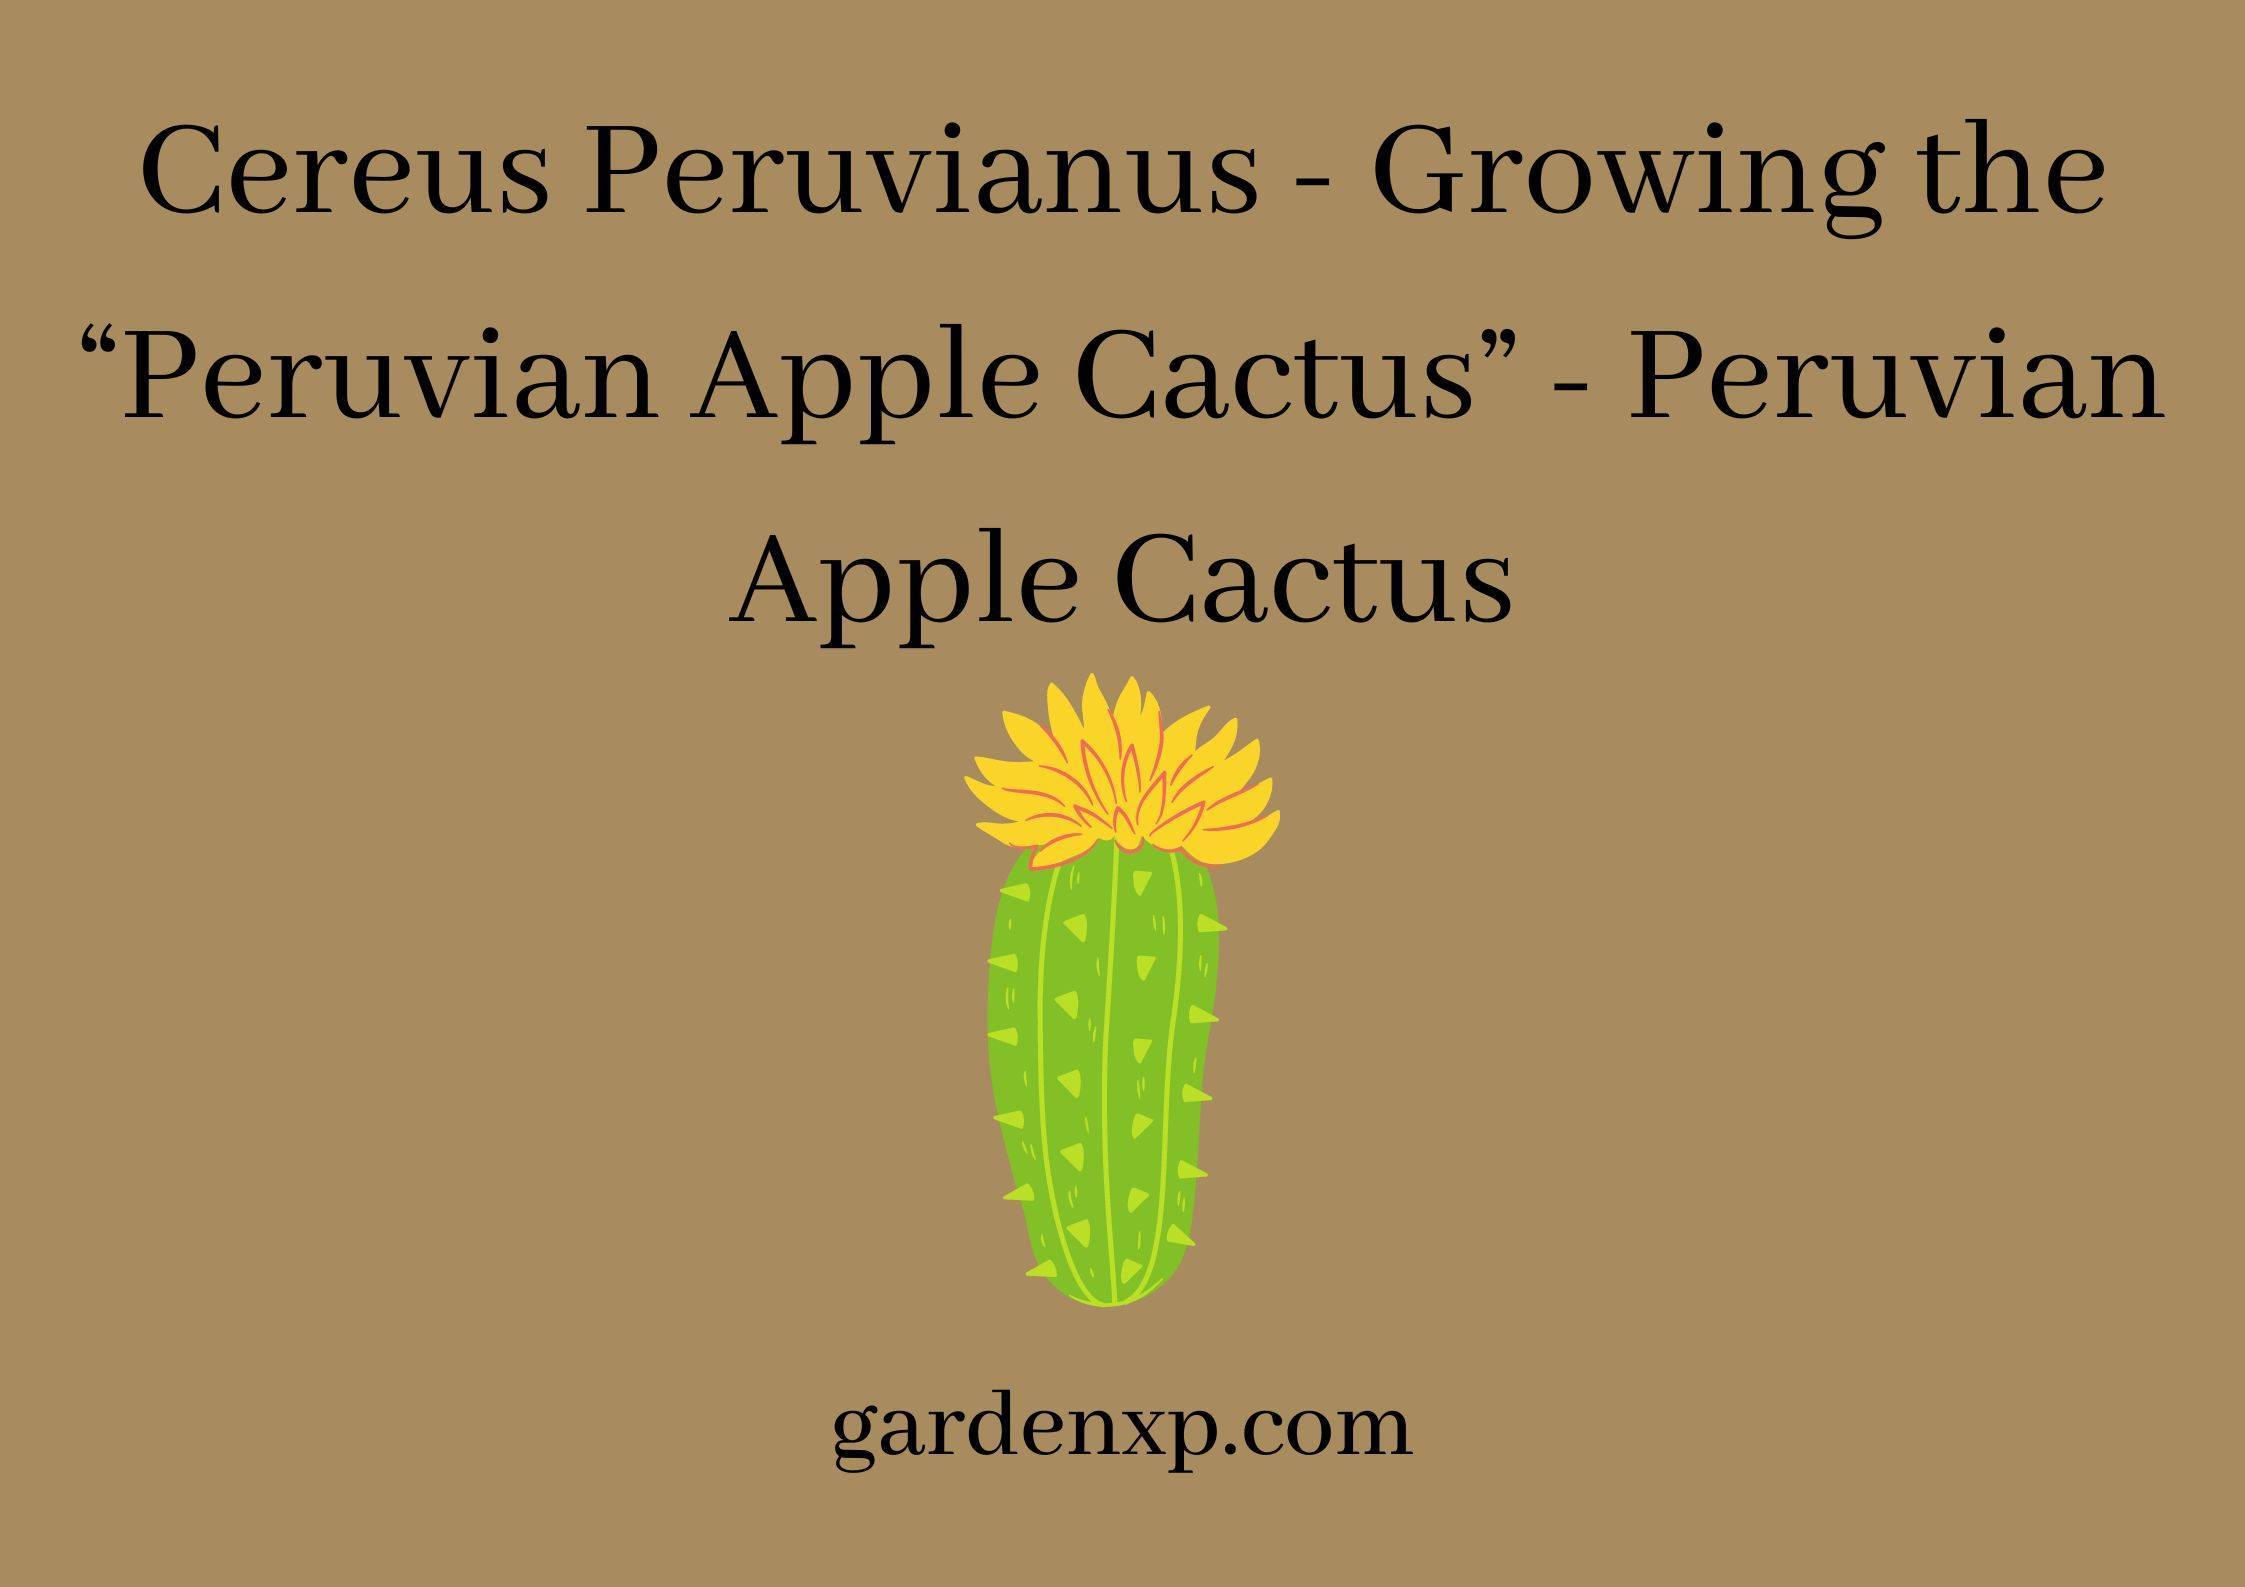 Cereus Peruvianus - Growing the “Peruvian Apple Cactus” - Peruvian Apple Cactus